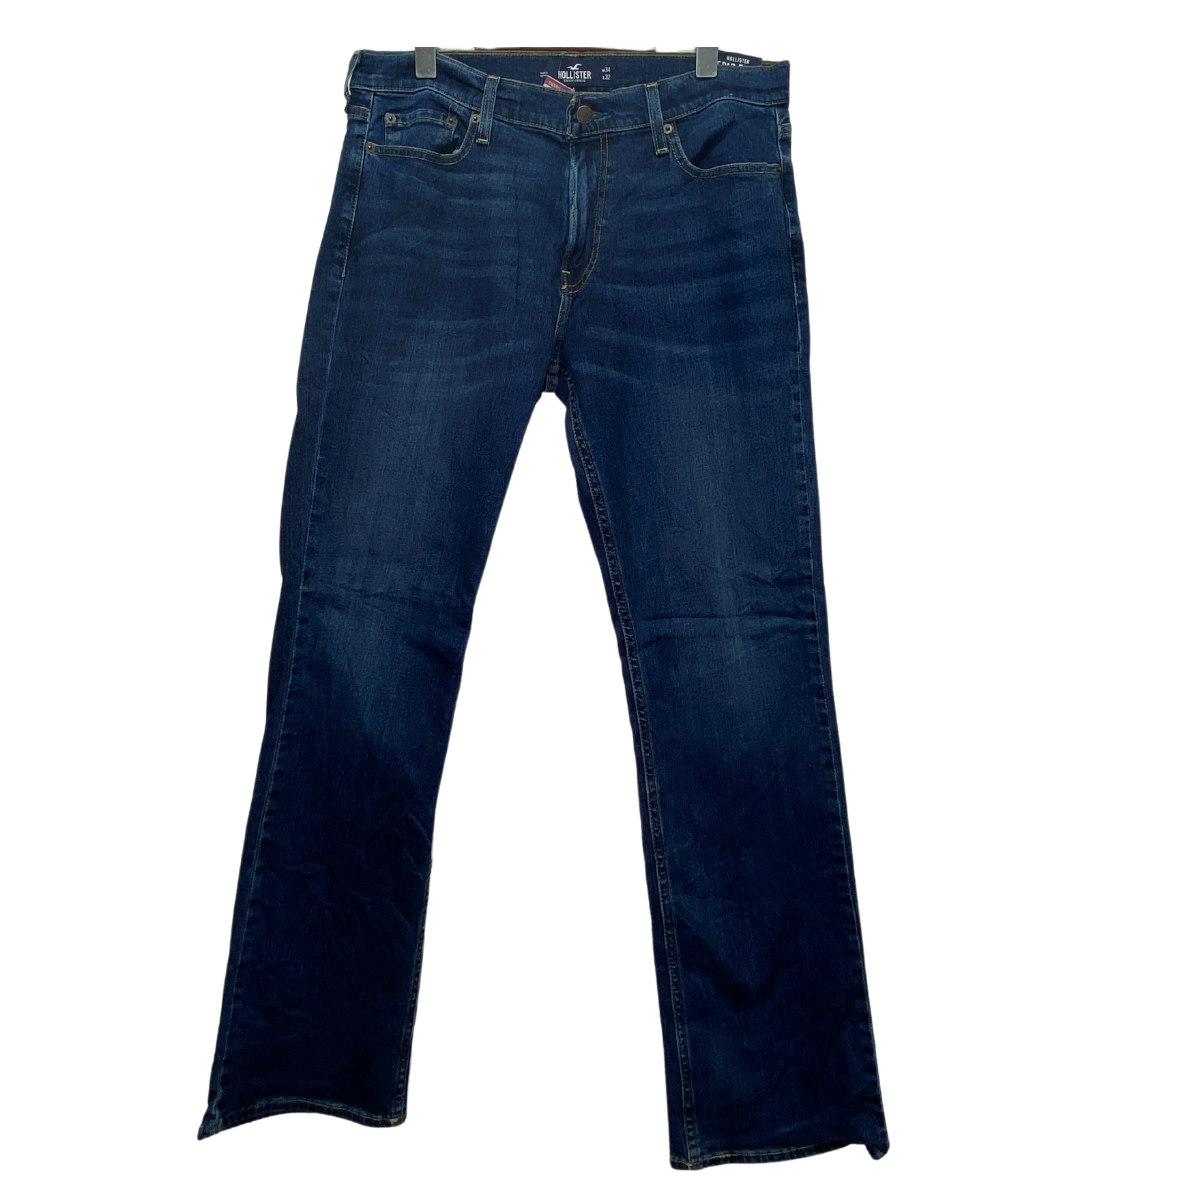 Pantalón Nuevo, Marca HOLLISTER, Talla 34×32, Medidas: 44 cm de Ancho y 105  cm de largo – American Prime